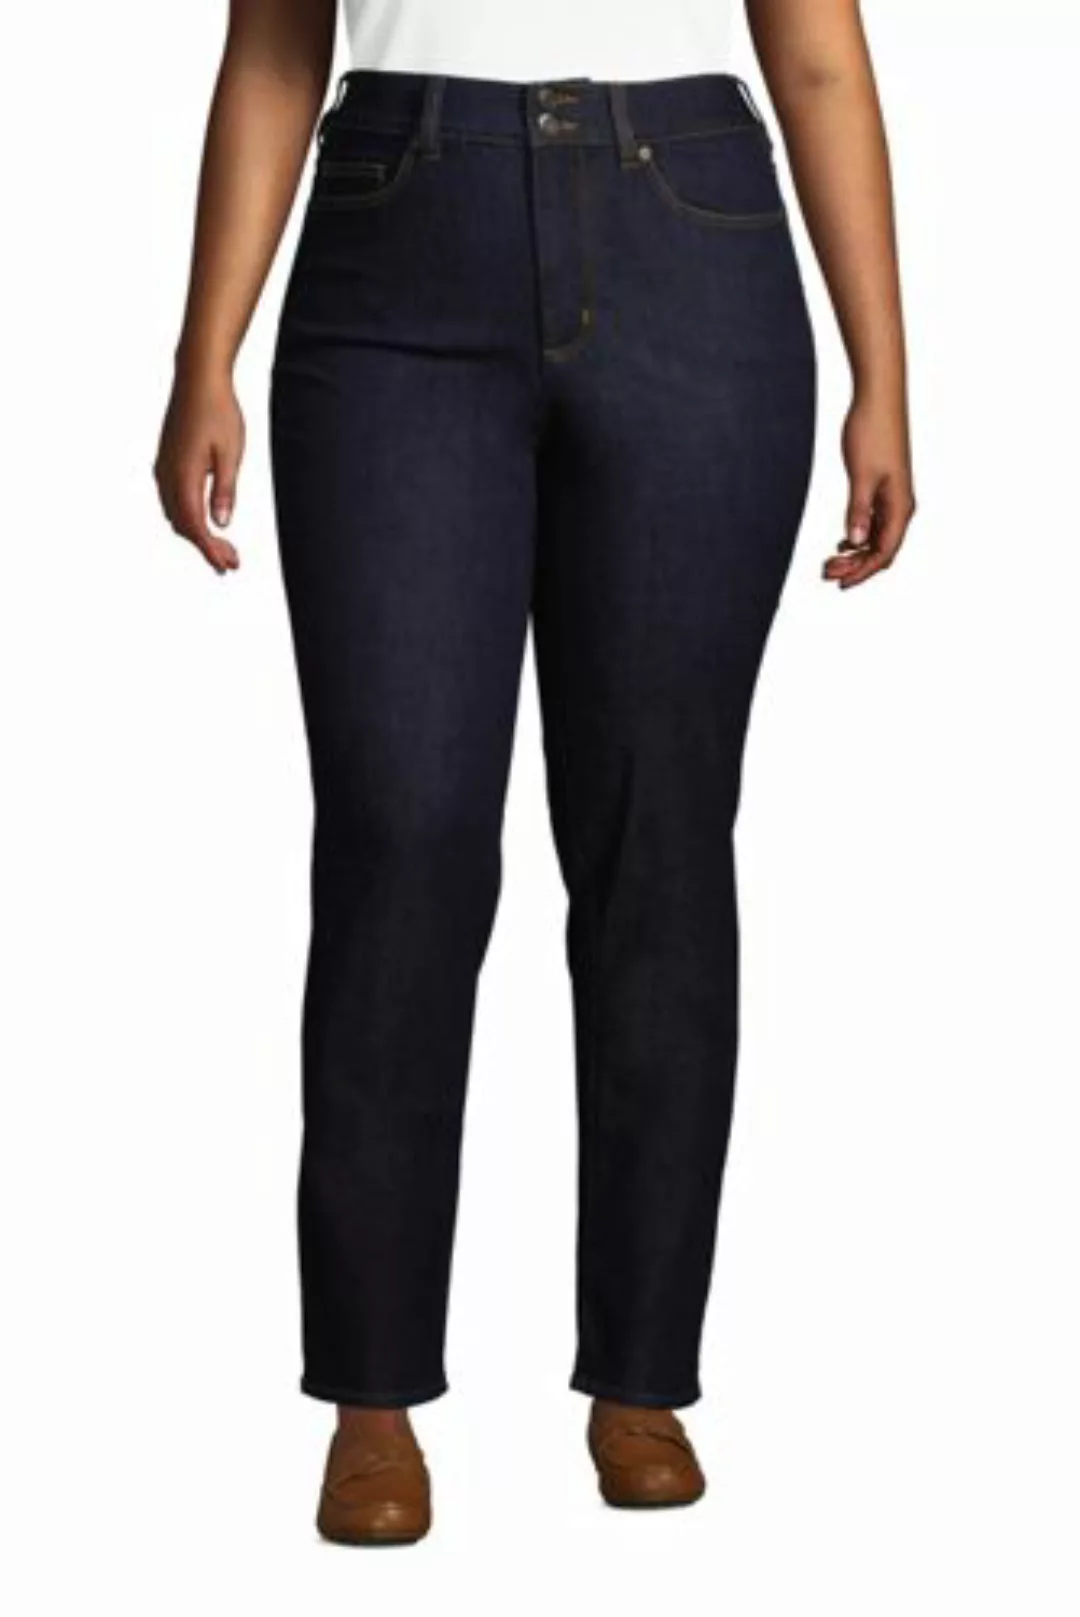 Shaping Jeans Straight Fit High Waist in großen Größen, Damen, Größe: 48 28 günstig online kaufen